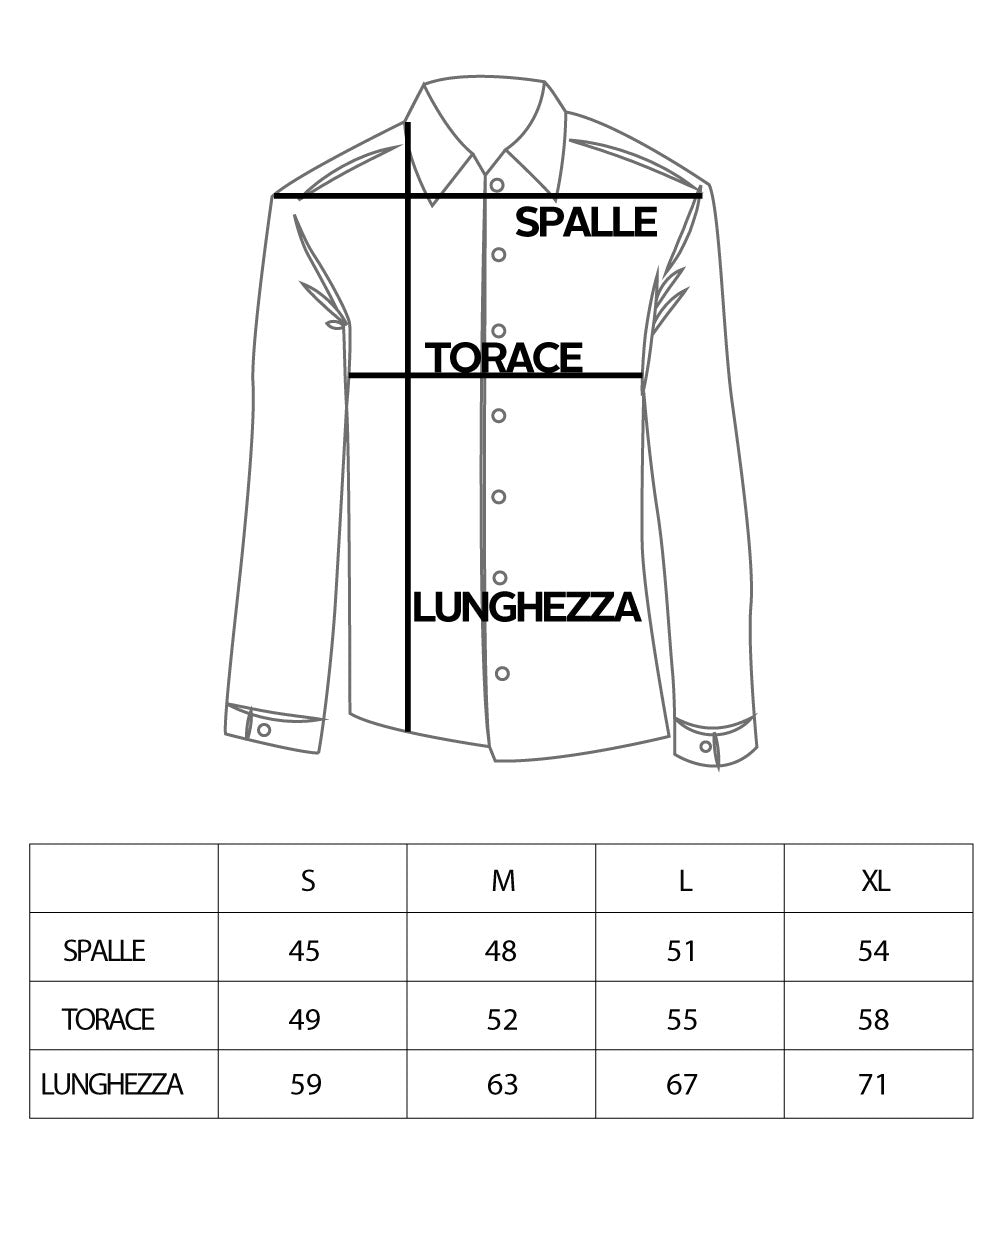 Completo Set Coordinato Uomo Cotone Camicia Con Colletto Bermuda Outfit GIOSAL-OU2321A